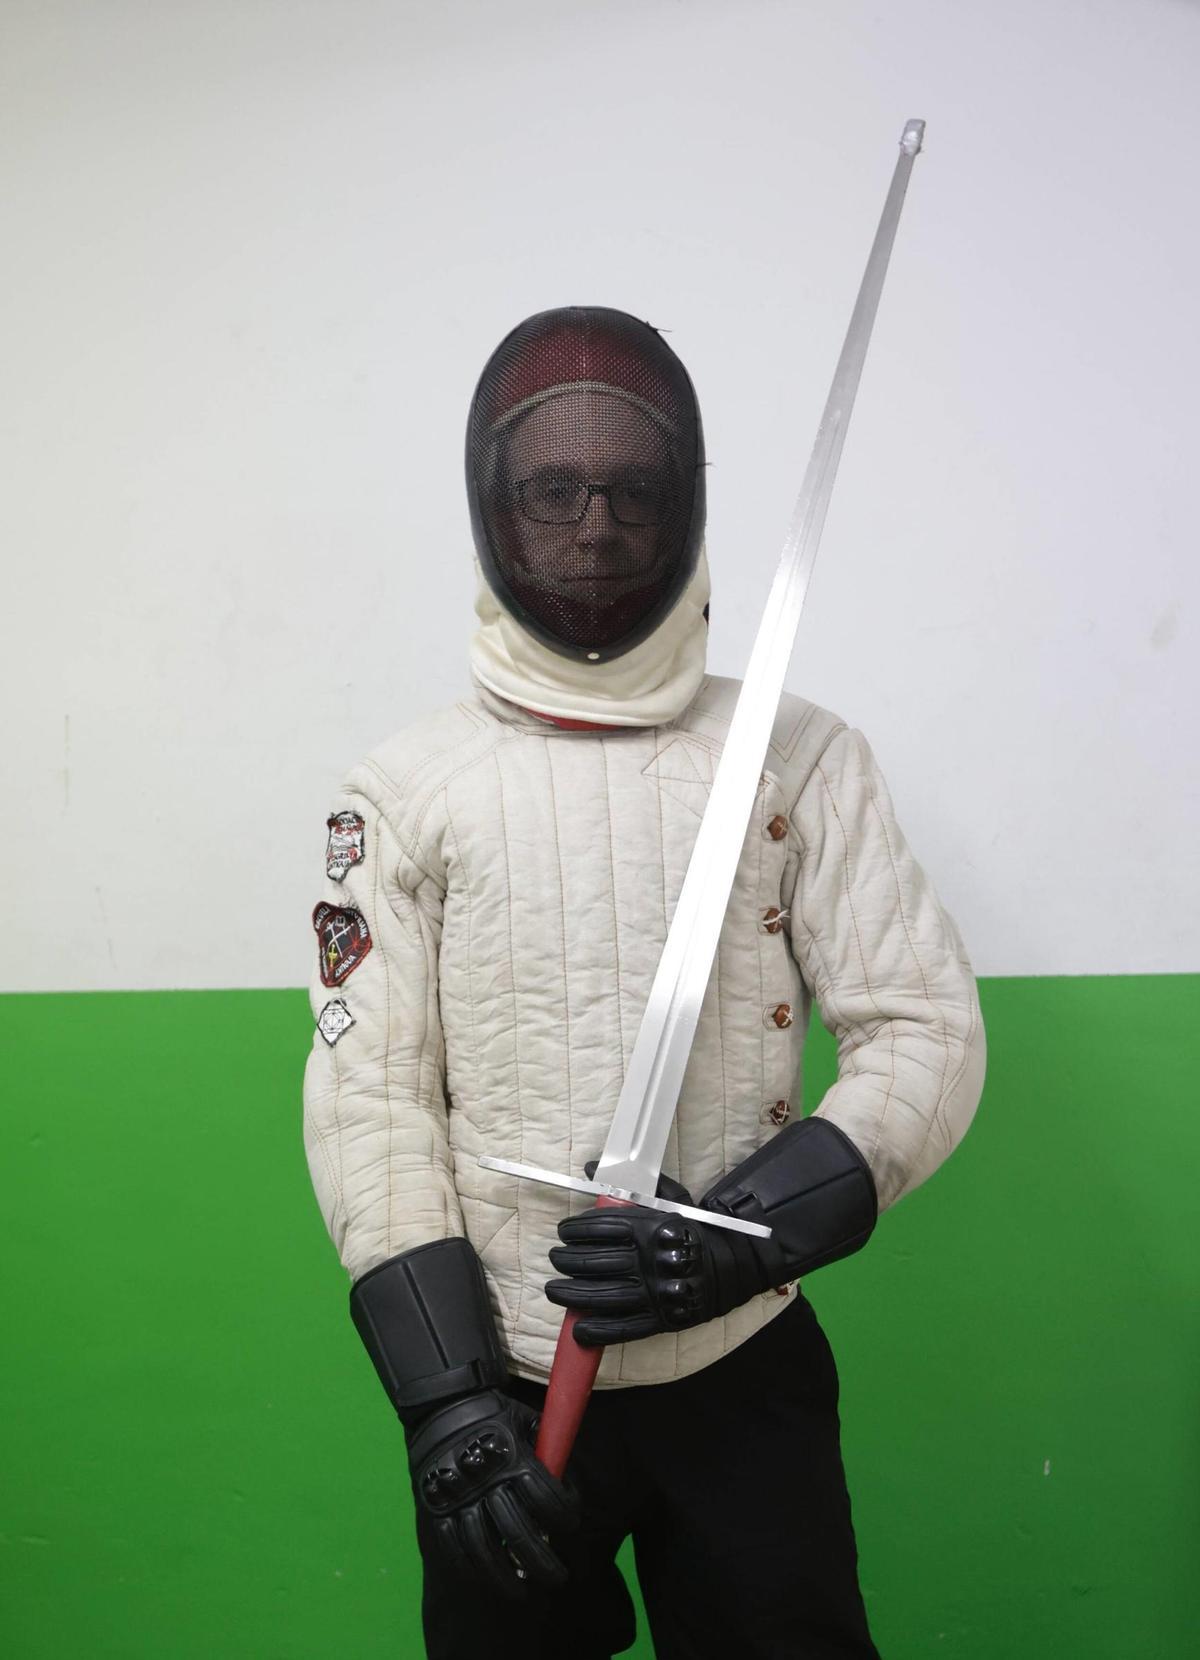 Fernando Bores, alumno de la EAEA. Lleva careta, chaquetilla y guantes para protegerse, y su espada tiene un tapón en la punta para proteger a su oponente